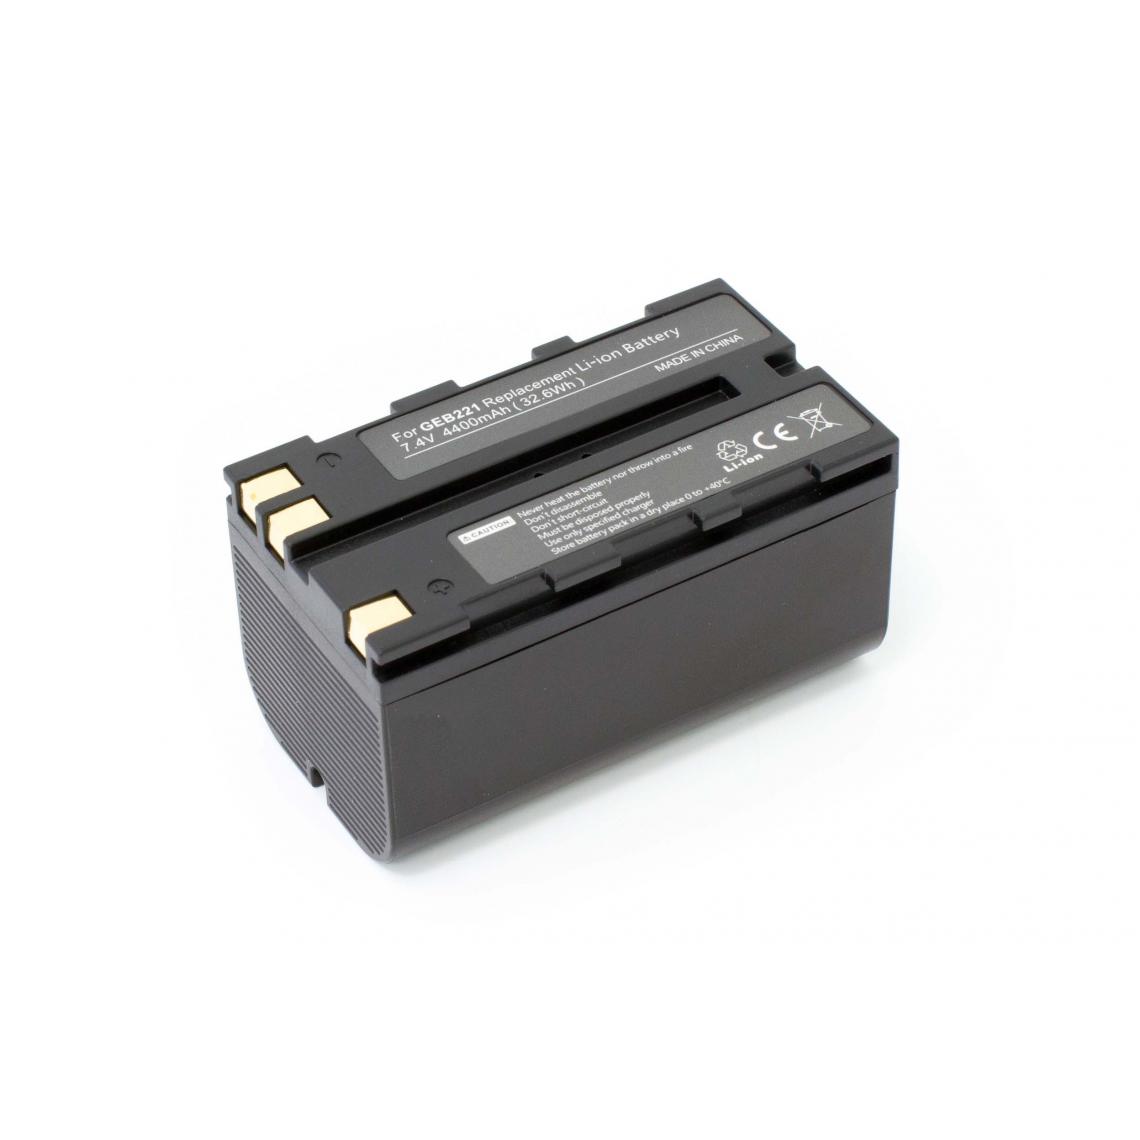 Vhbw - vhbw Batterie compatible avec Leica TCR407, TCR407 Power dispositif de mesure laser, outil de mesure (4400mAh, 7,4V, Li-ion) - Piles rechargeables